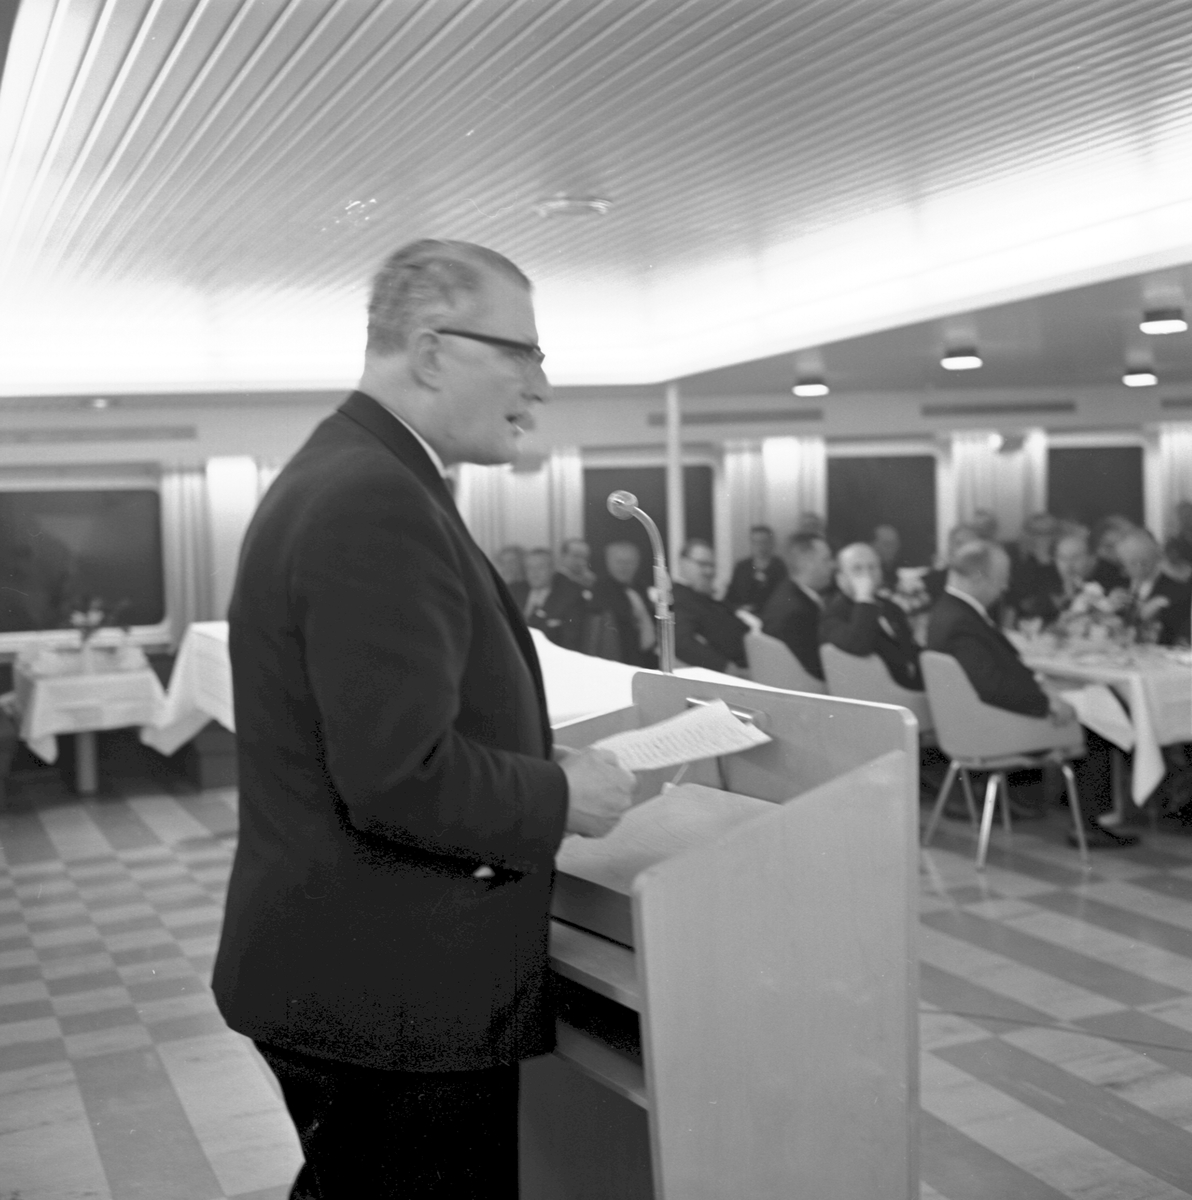 Invigningsresa med M/S "Gustav Vasa". Levererades 10 april 1965 till Lion Ferry Ab, Halmstad. Utchartrad samma dag till Statens Järnvägar, SJ, Malmö. Generaldirektör, Gd, Erik Upmark, vid mikrofonen